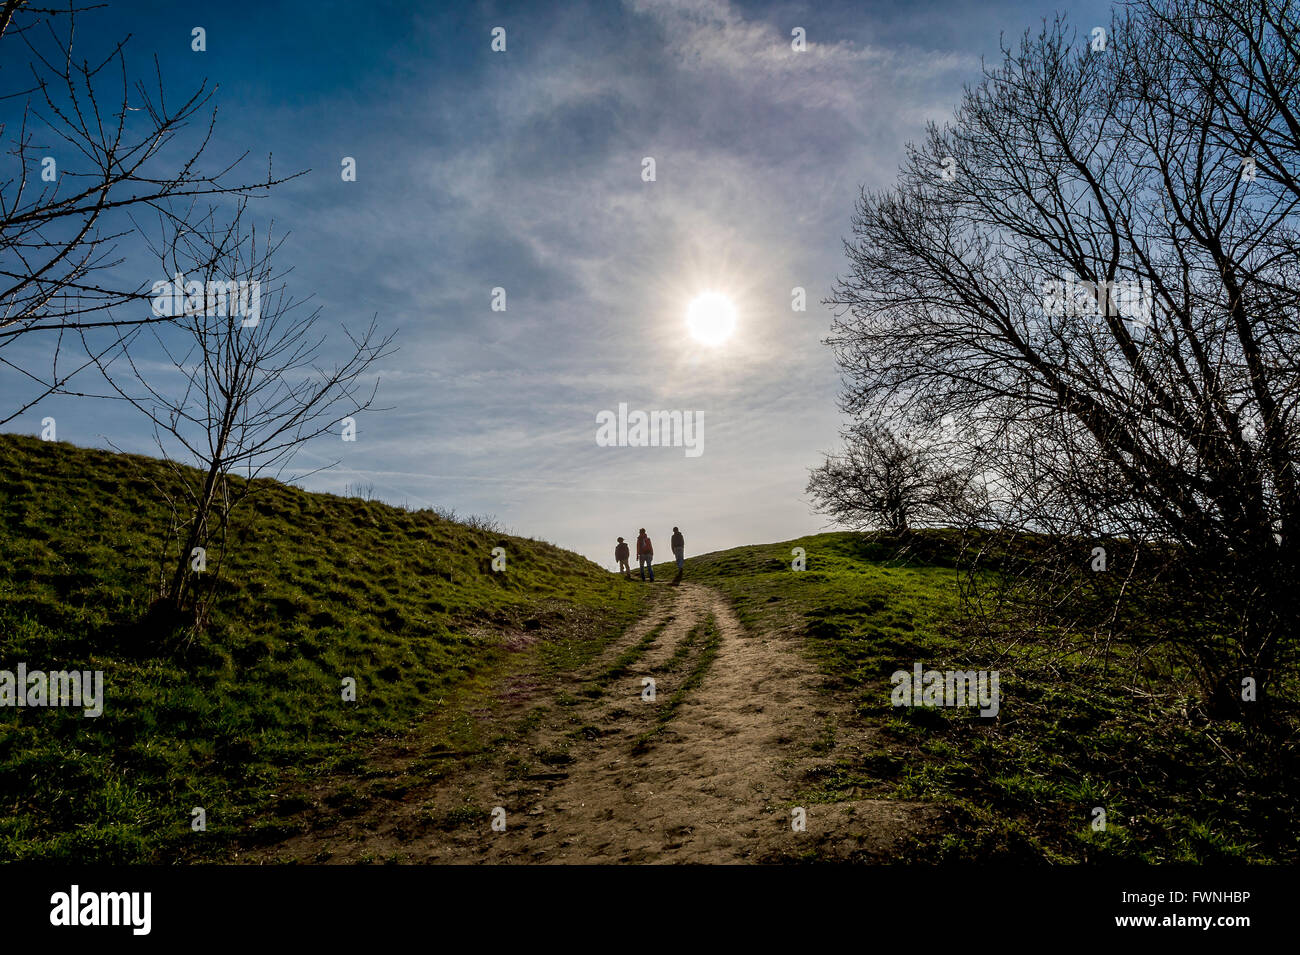 drei Personen in Contra Licht geht auf dem Weg im Frühjahr Land Seite auseinander Objektiv Stockfoto